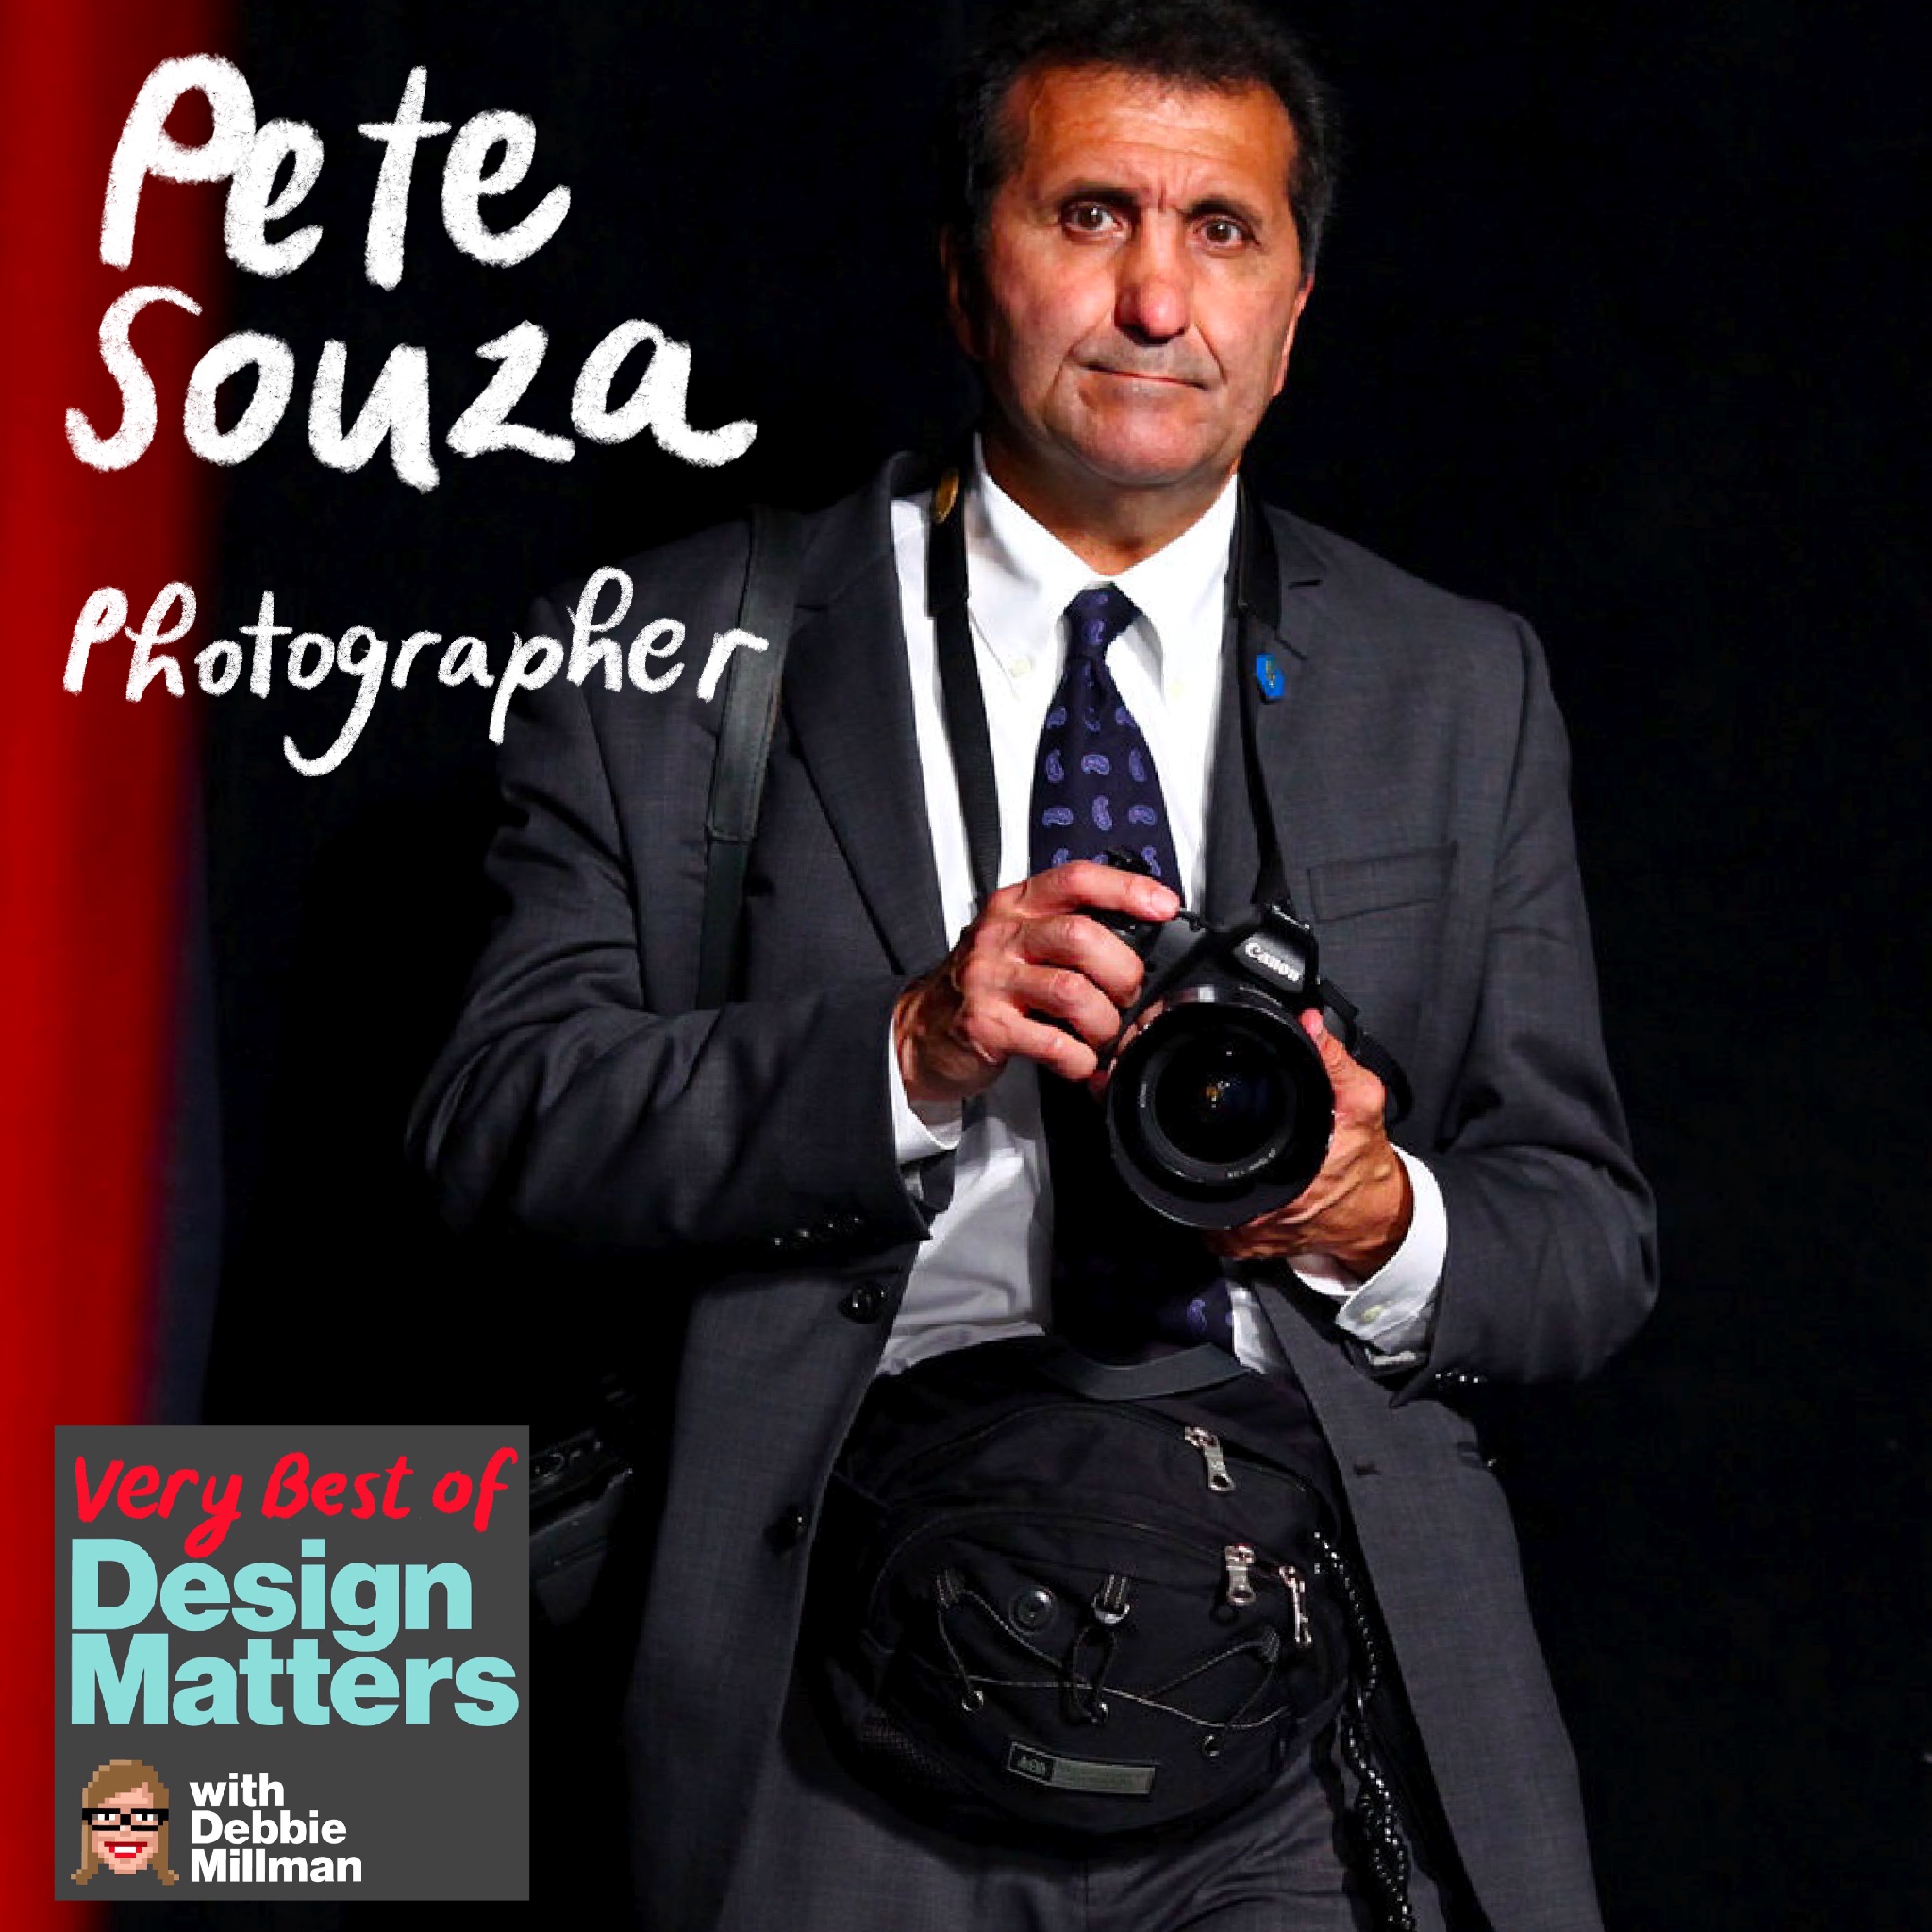 Best of Design Matters: Pete Souza